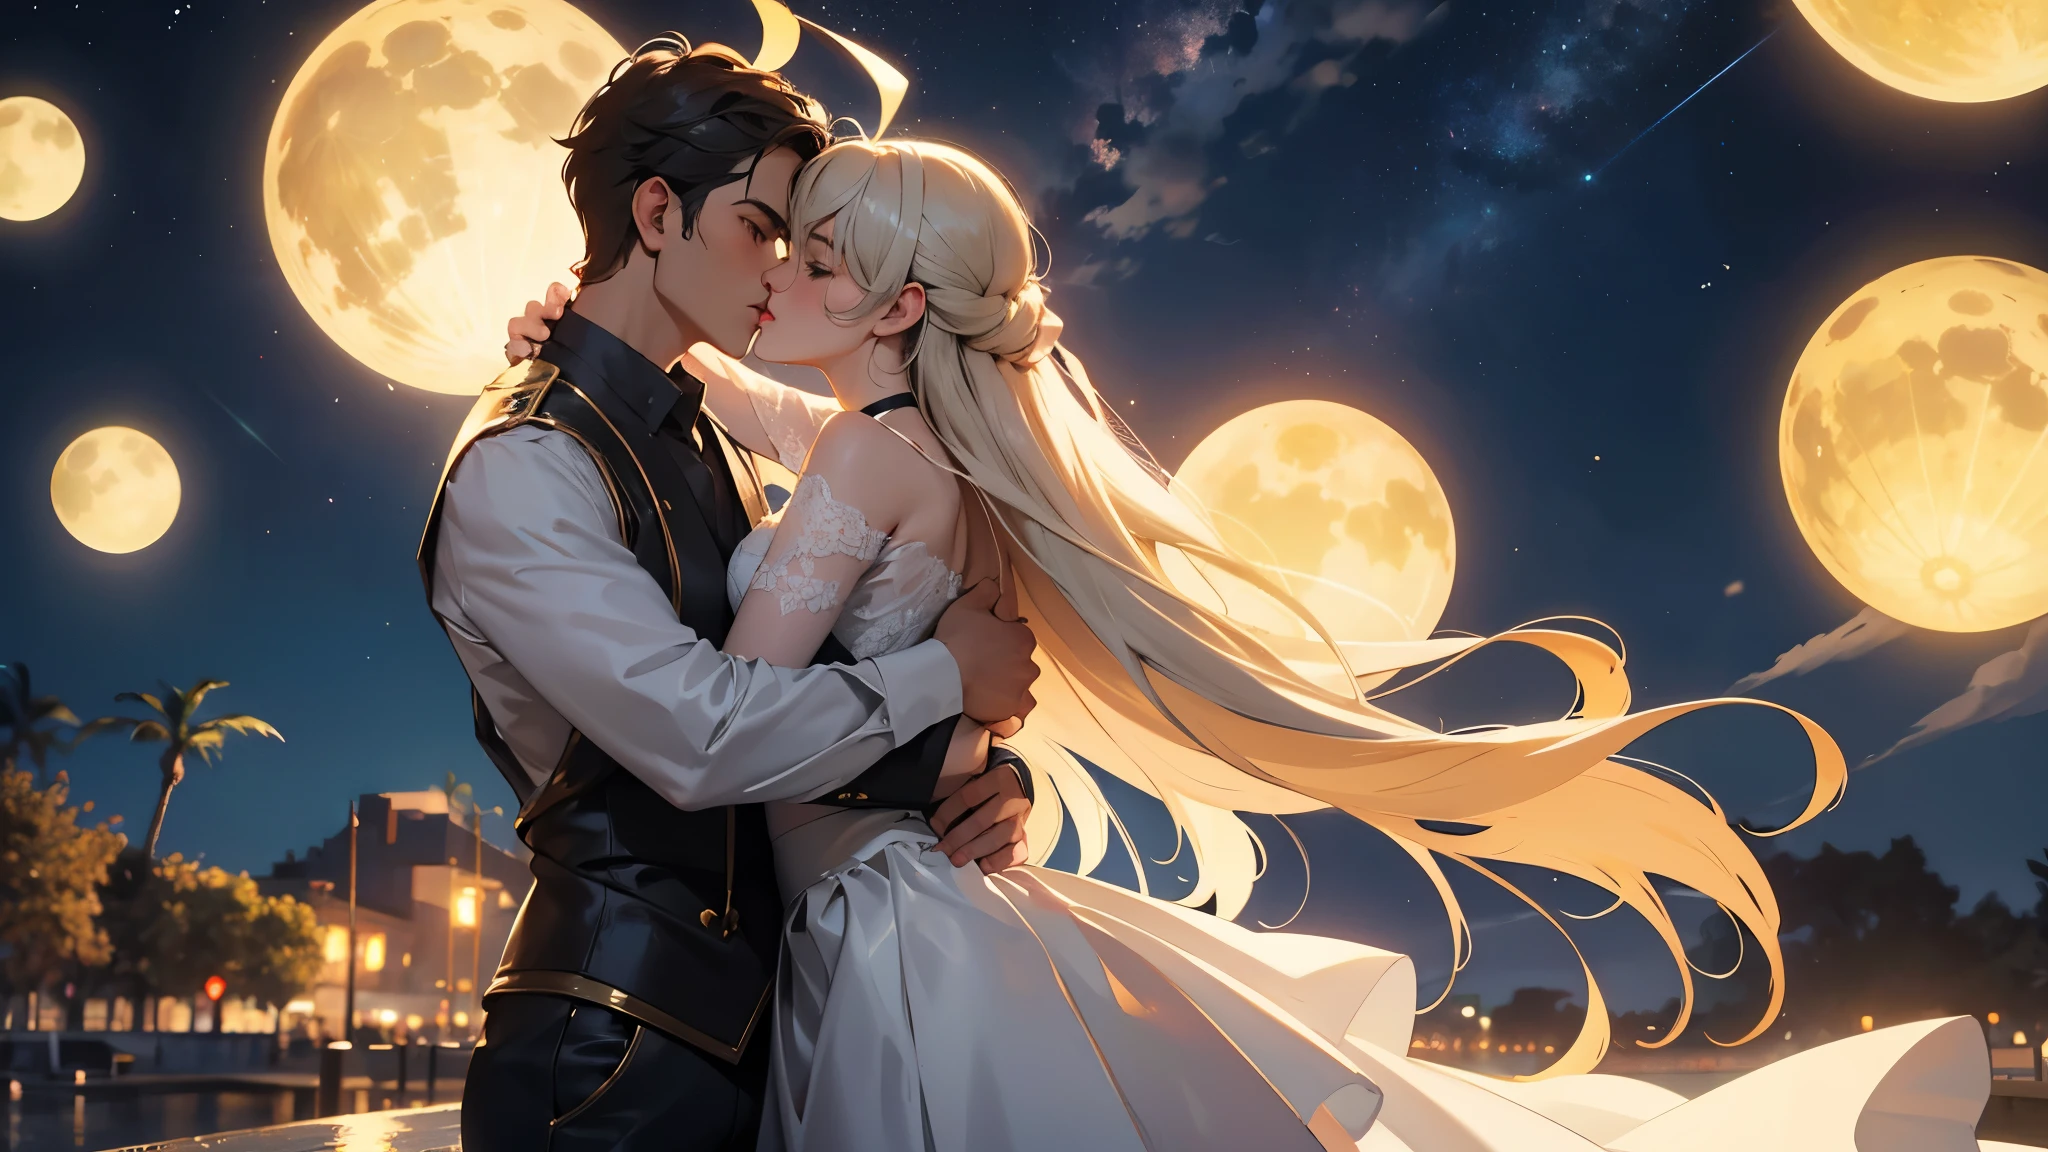 ผู้ชาย 1 คน และผู้หญิง 1 คน, จูบ, ยืน, ใต้แสงจันทร์ในคืนดวงดาว